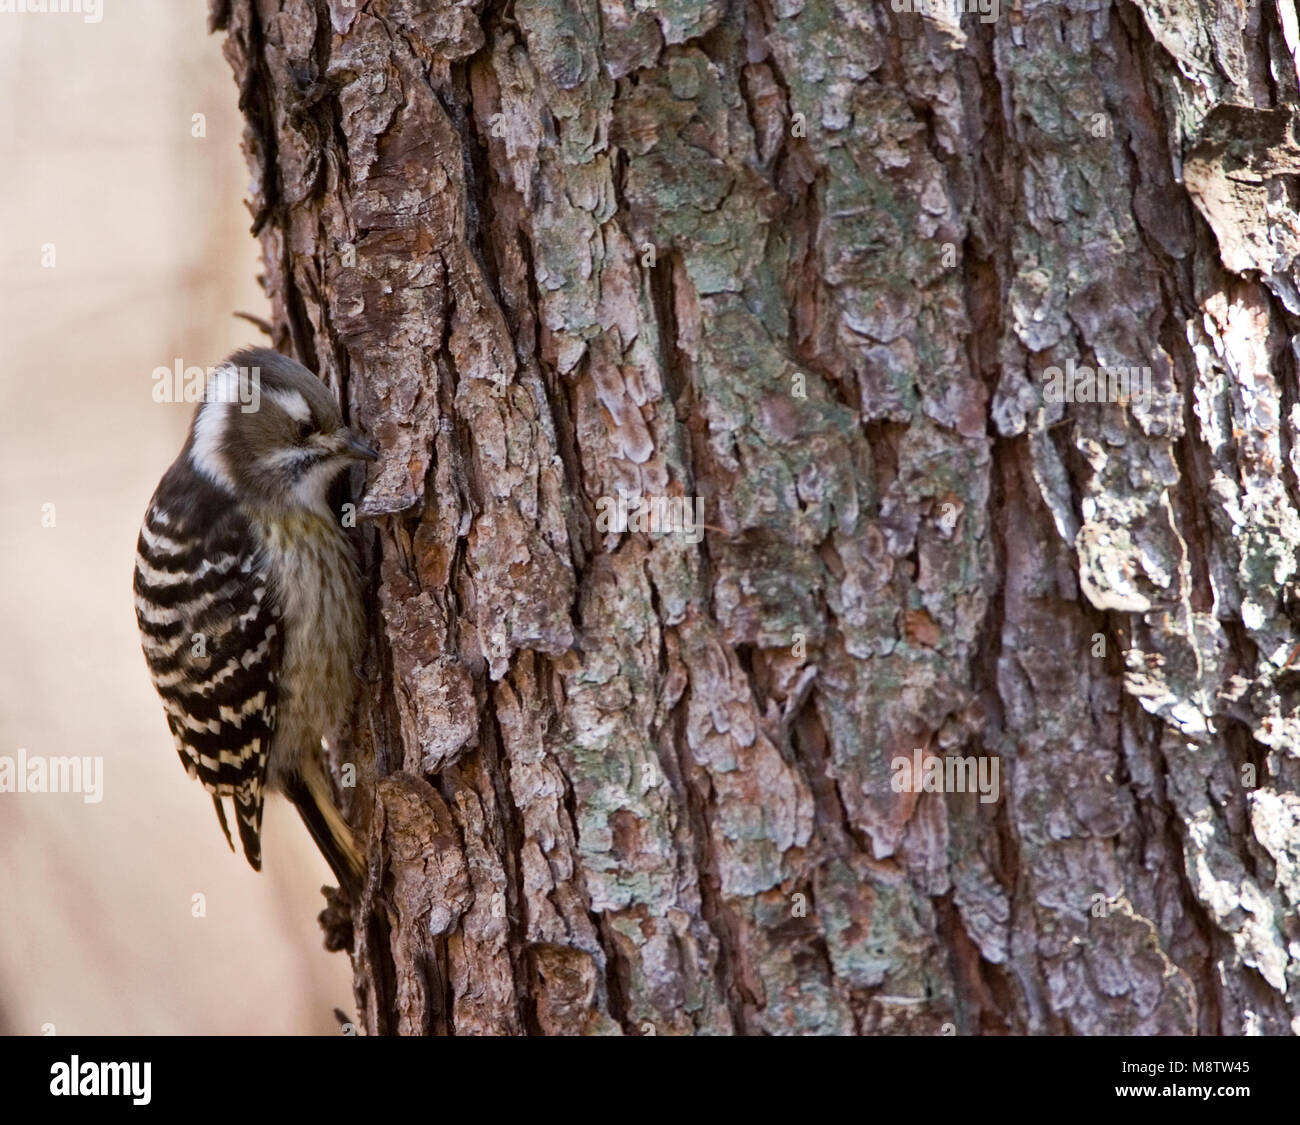 Japanse Dwergspecht tegen tak; Japanese Pygmy Woodpecker against branch Stock Photo